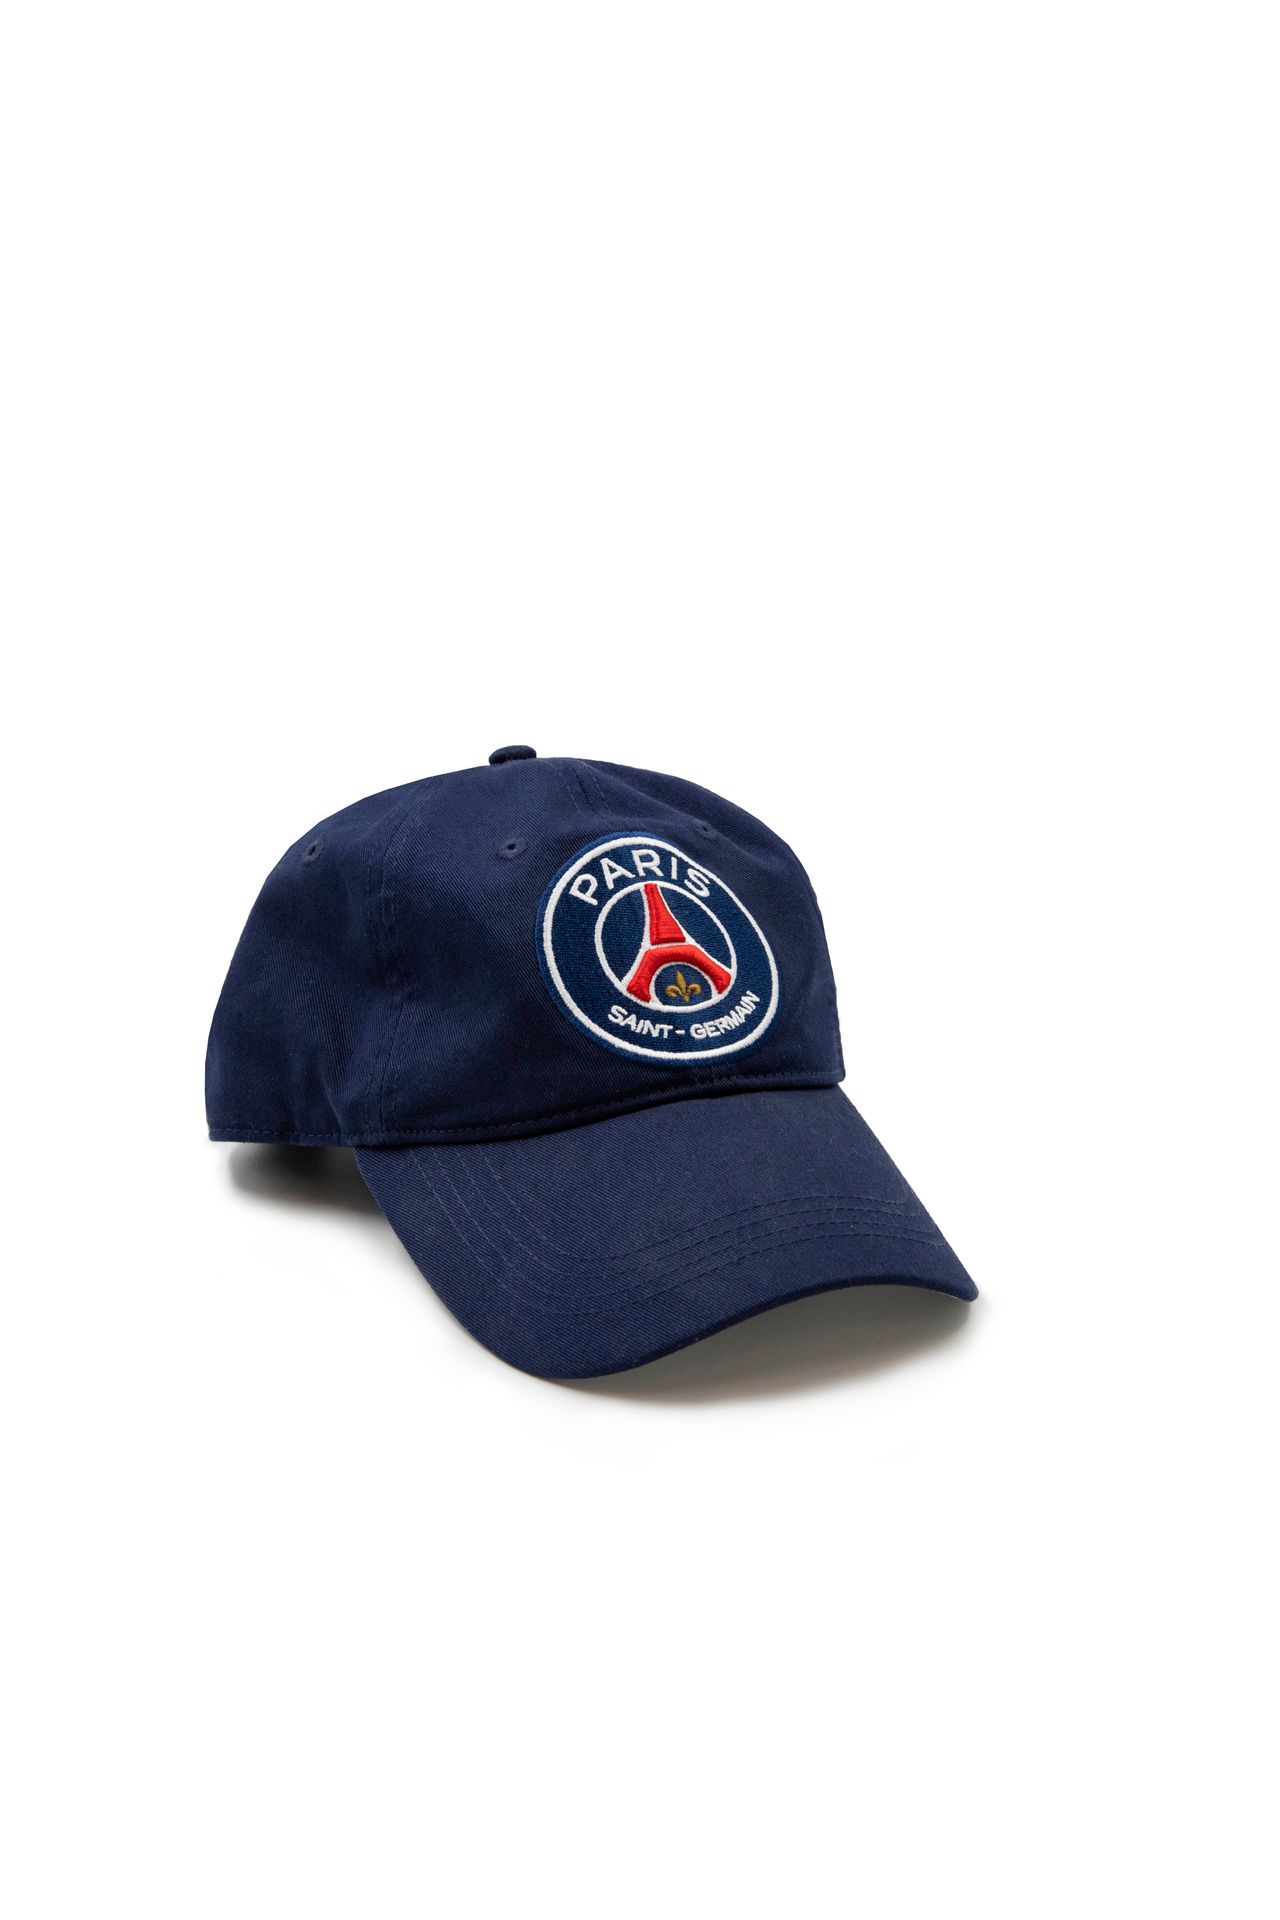 Teddy RINER Paris Saint-Germain cap*, worn by Teddy Riner in 2017 on the occasio&hellip;